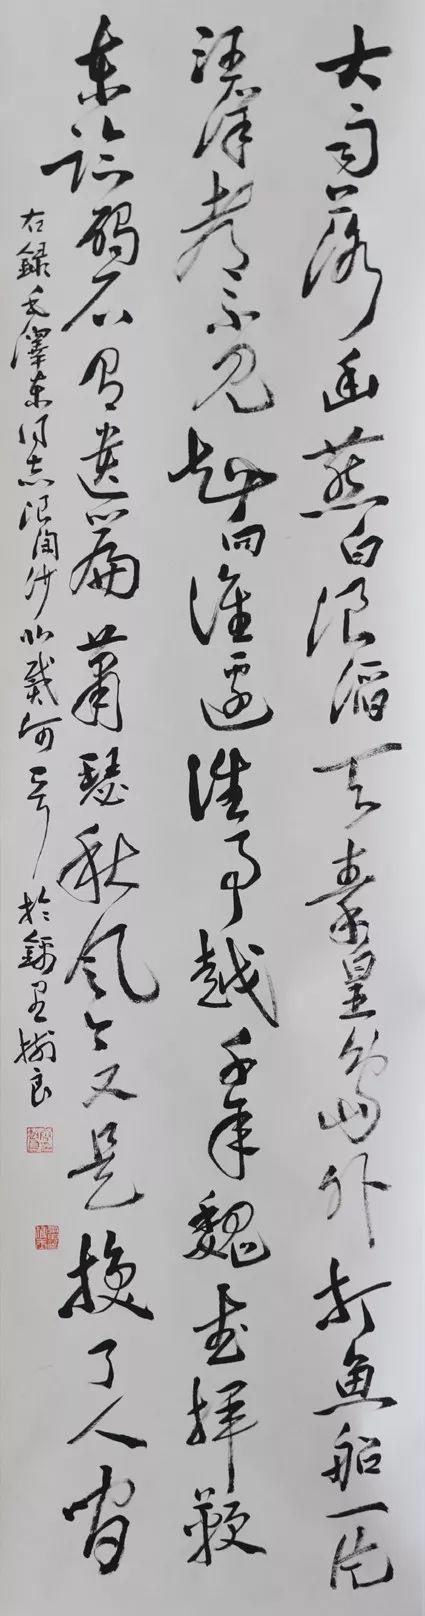 我和我的祖国 ——锦江区庆祝中华人民共和国成立70周年书画摄影文学主题创作展（书画部分）